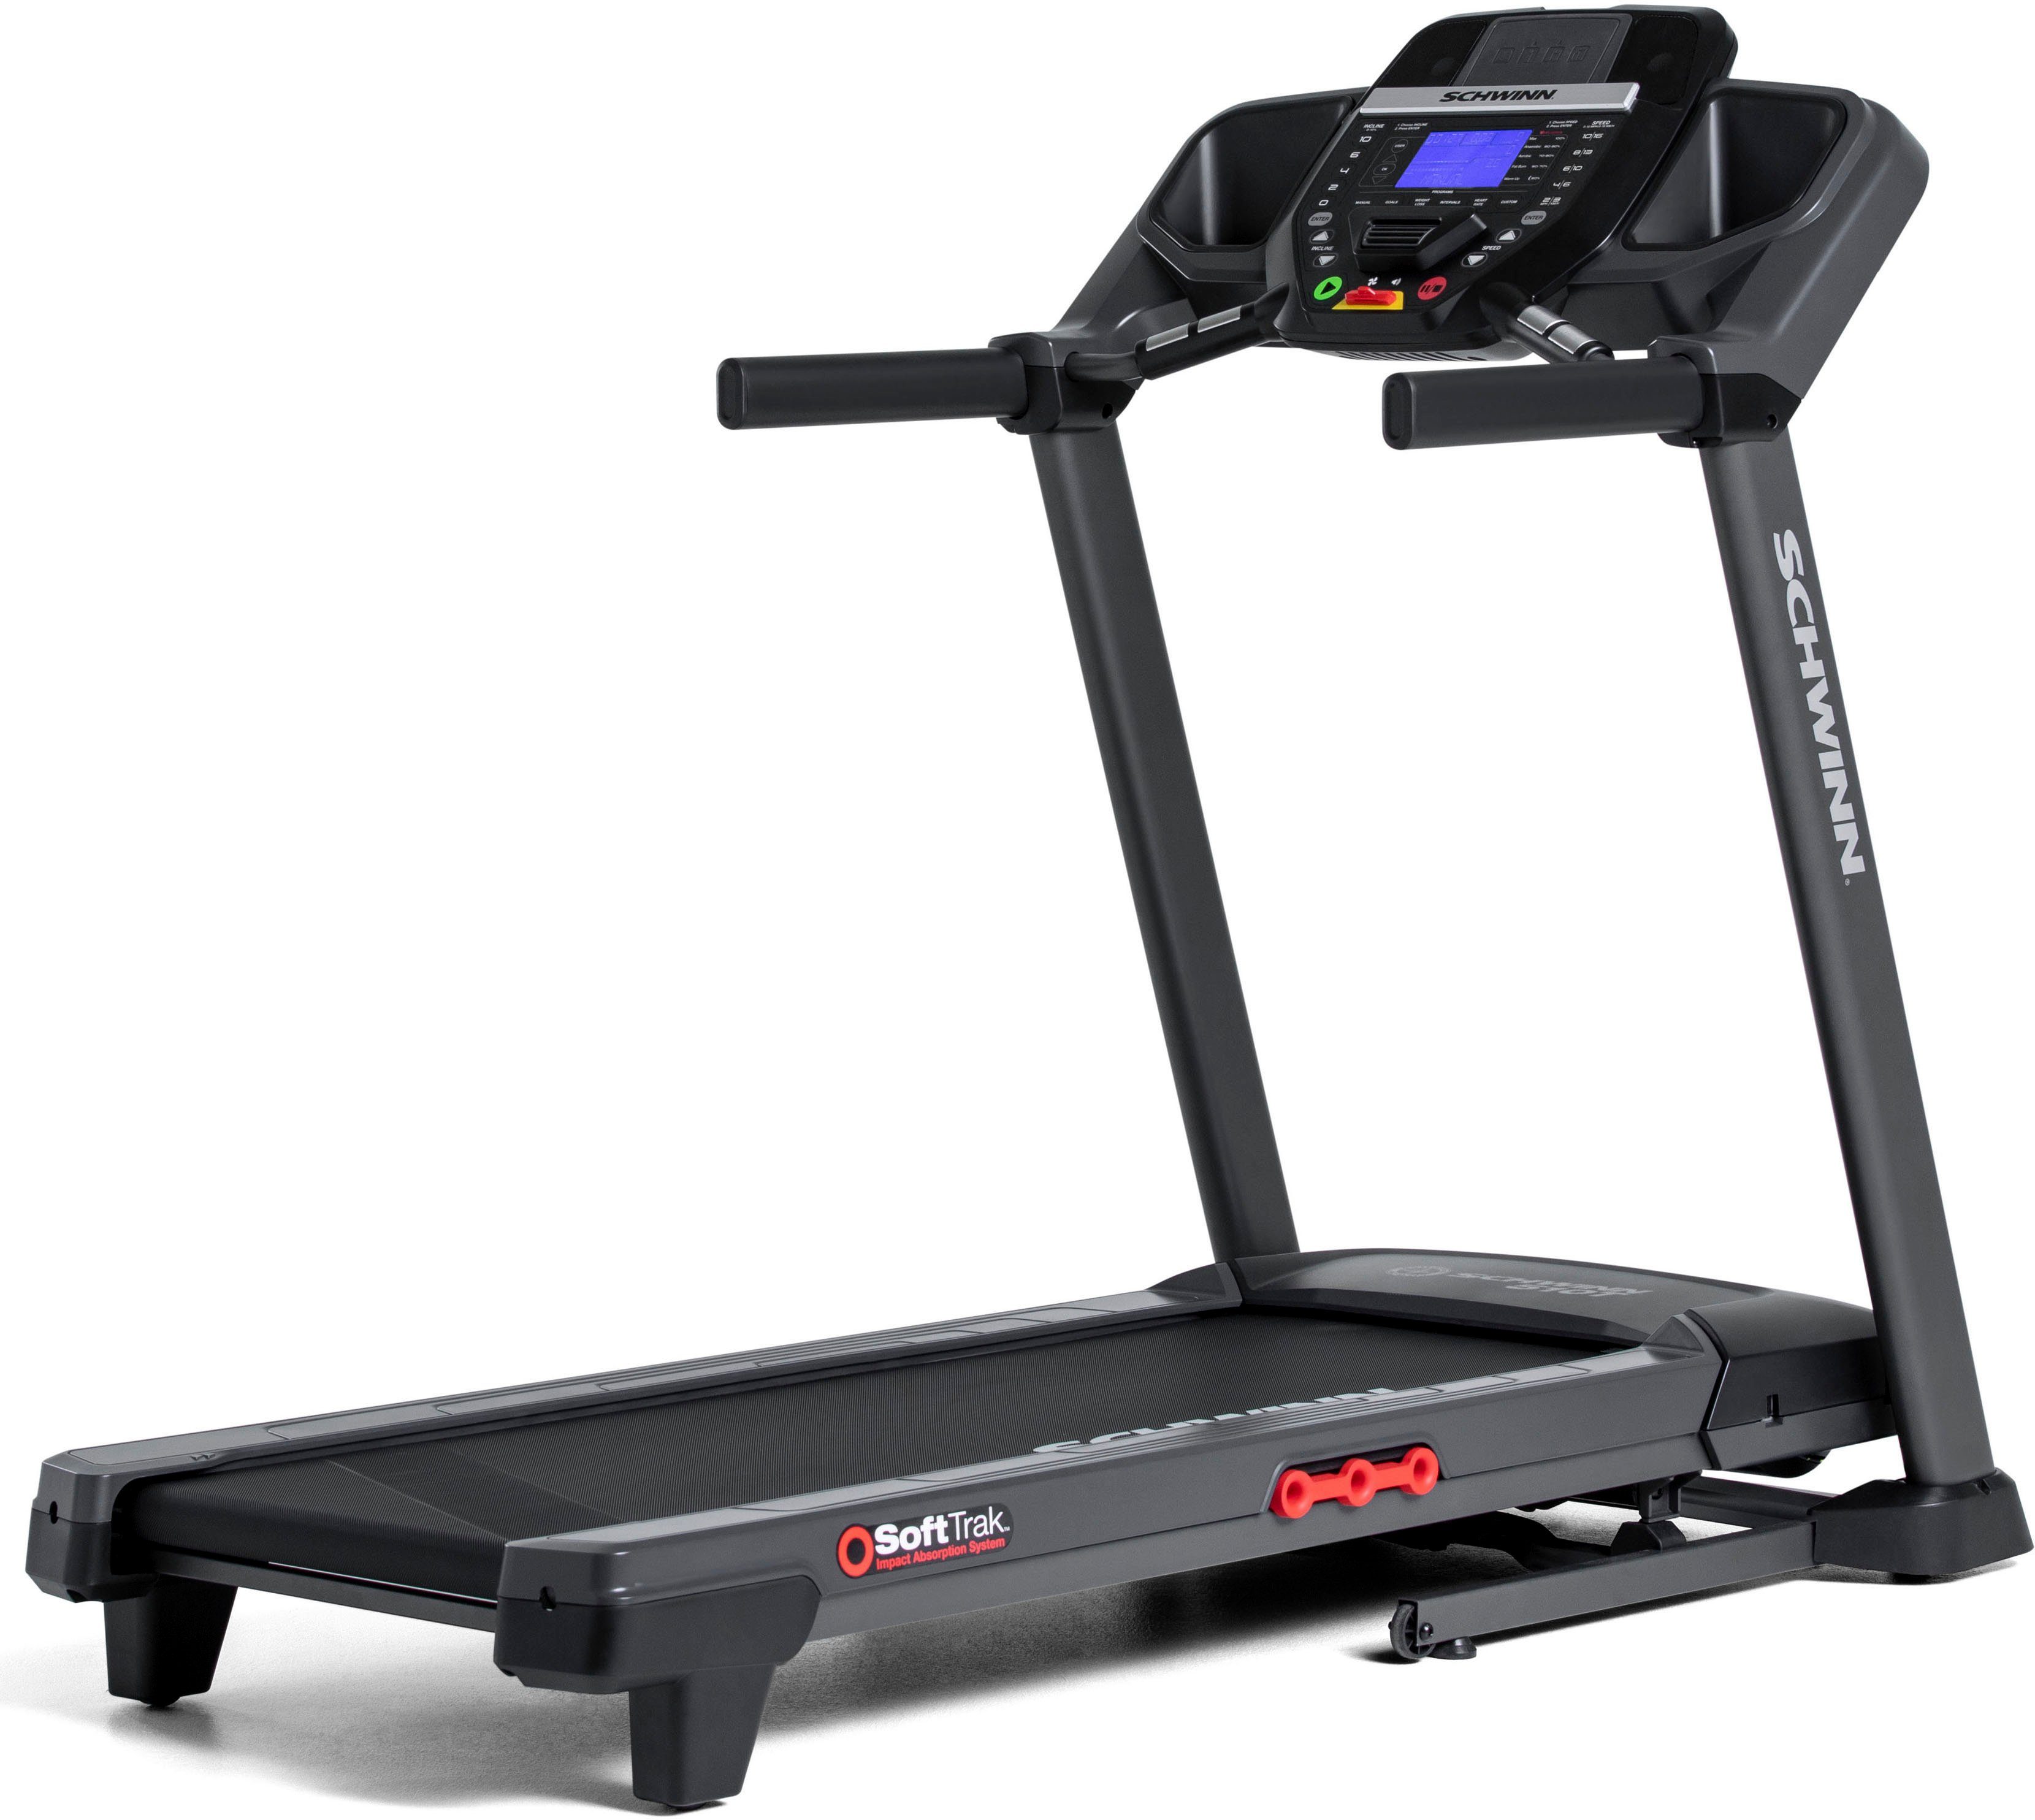 Schwinn® Laufband »510T«, mit Bluetooth, 18 Trainingsprogramme (Quick  Start, Training, Gewichtsreduzierung, Herzfrequenzprogramme,  Benutzerprofile) online kaufen | OTTO